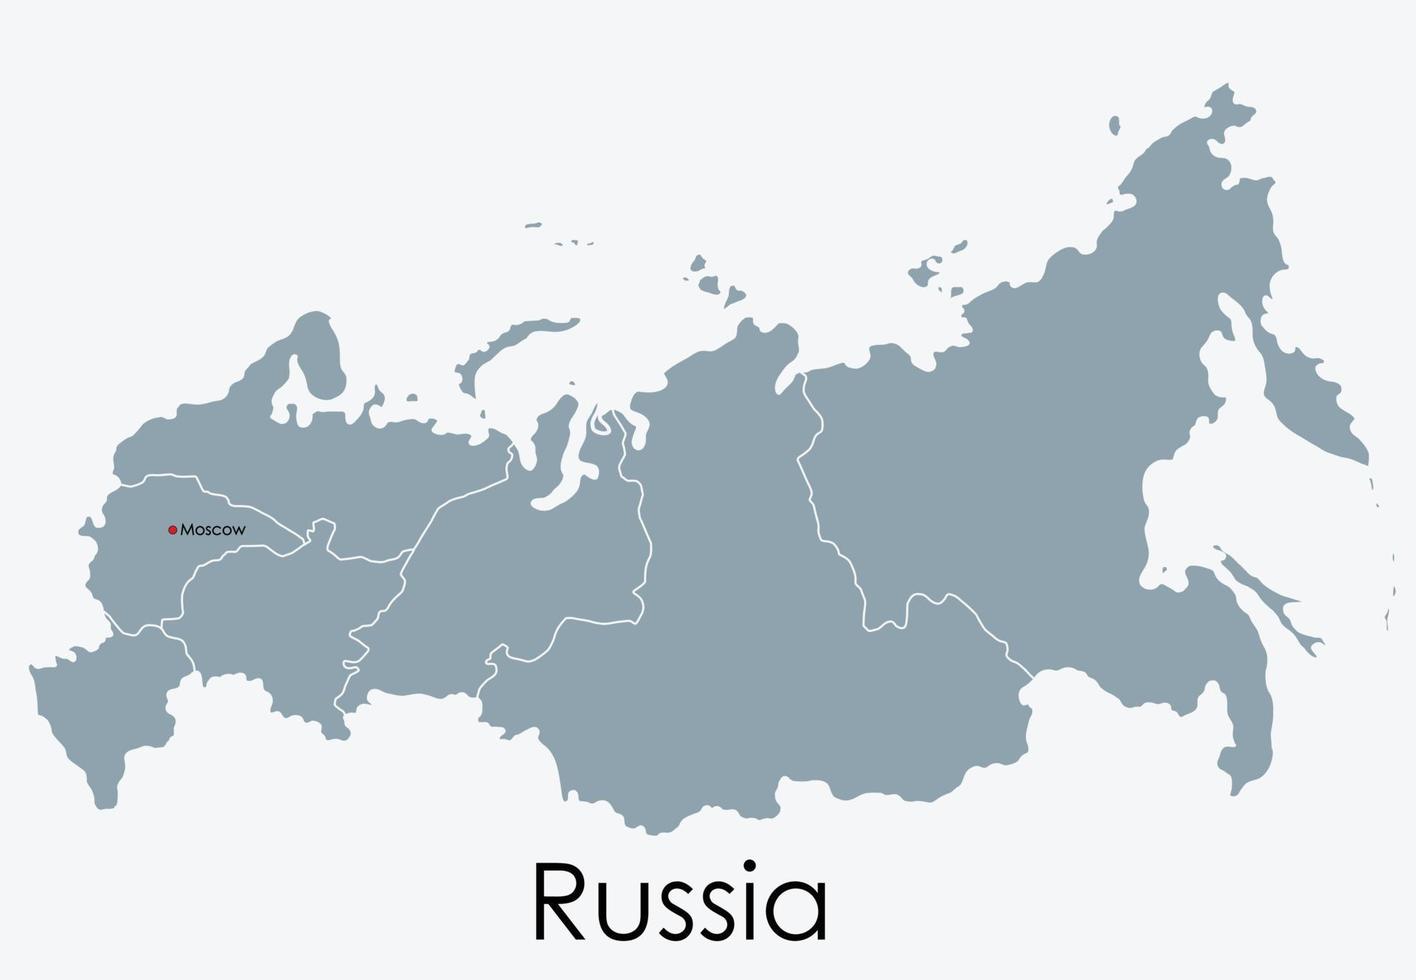 mappa della russia disegno a mano libera su sfondo bianco. vettore